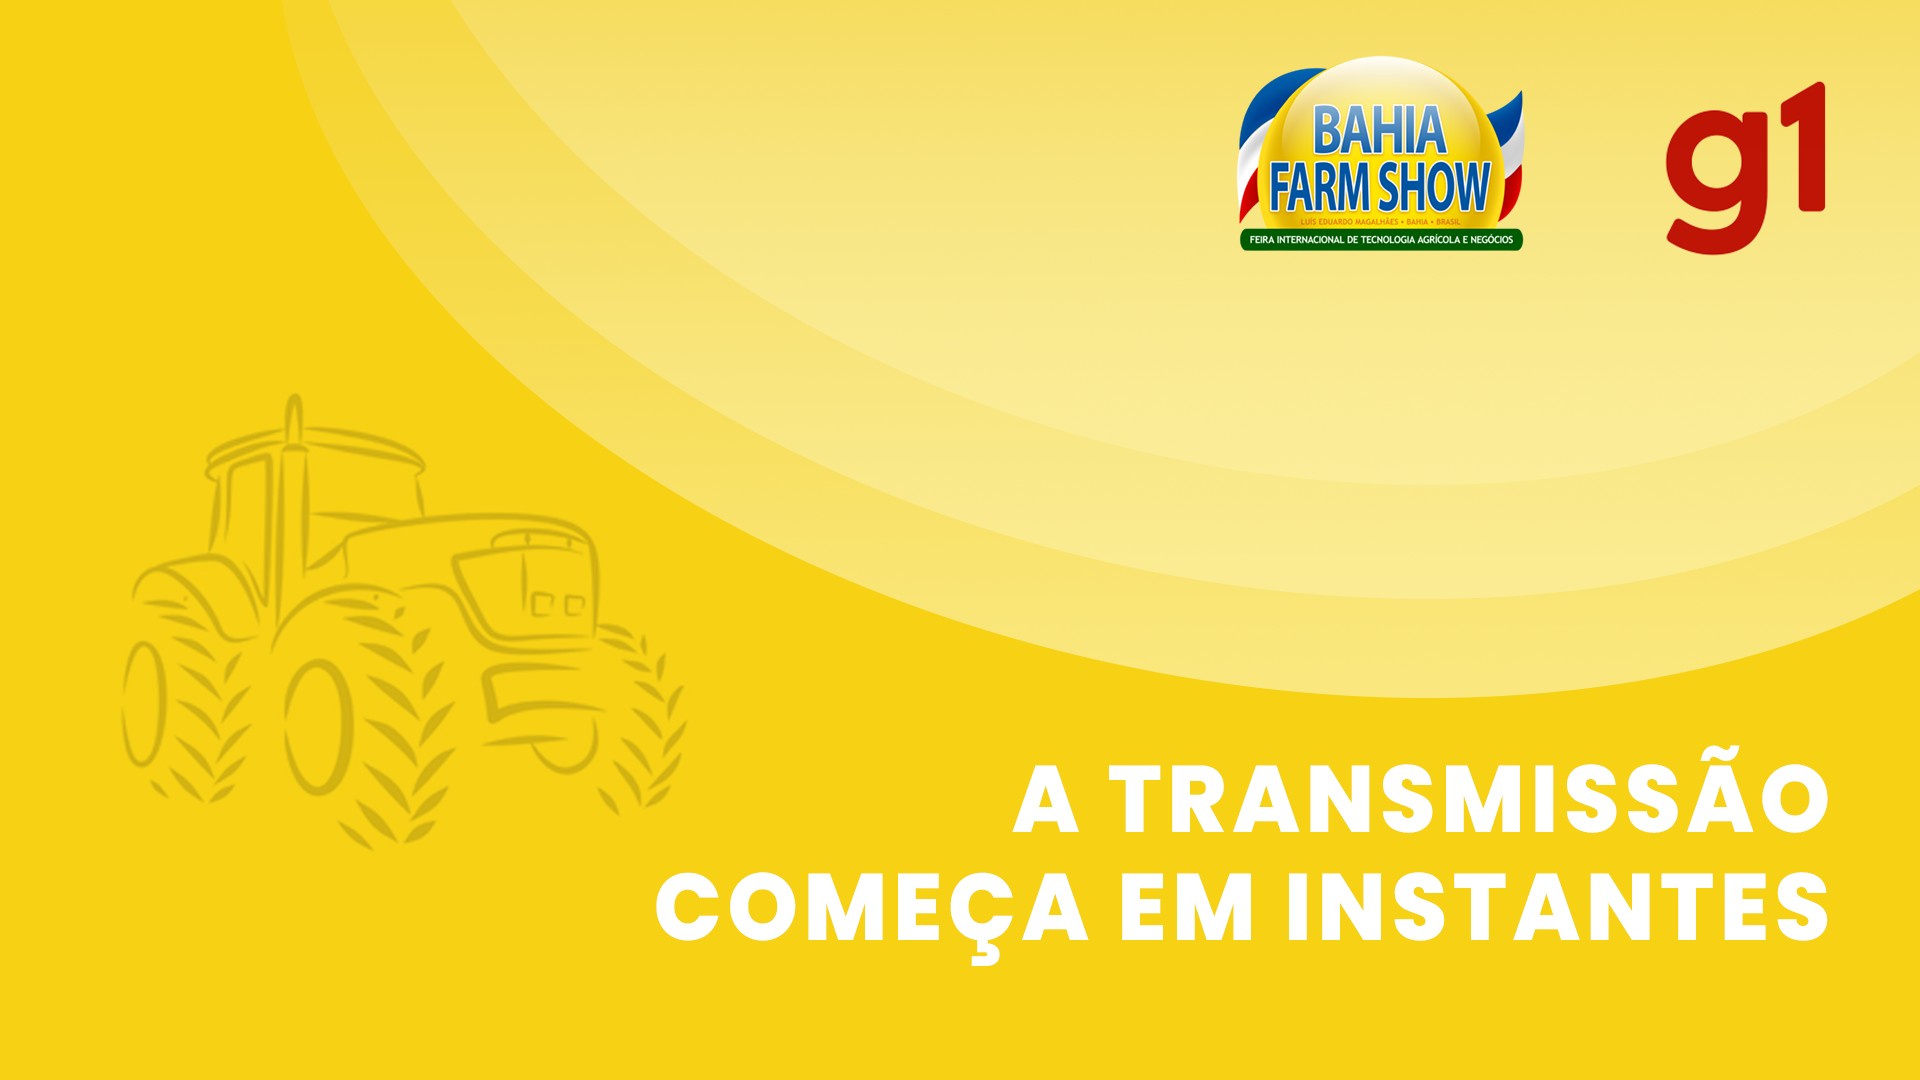 Agricultura de baixo carbono e ESG são discutidos em painel da Bahia Farm Show; acompanhe ao vivo